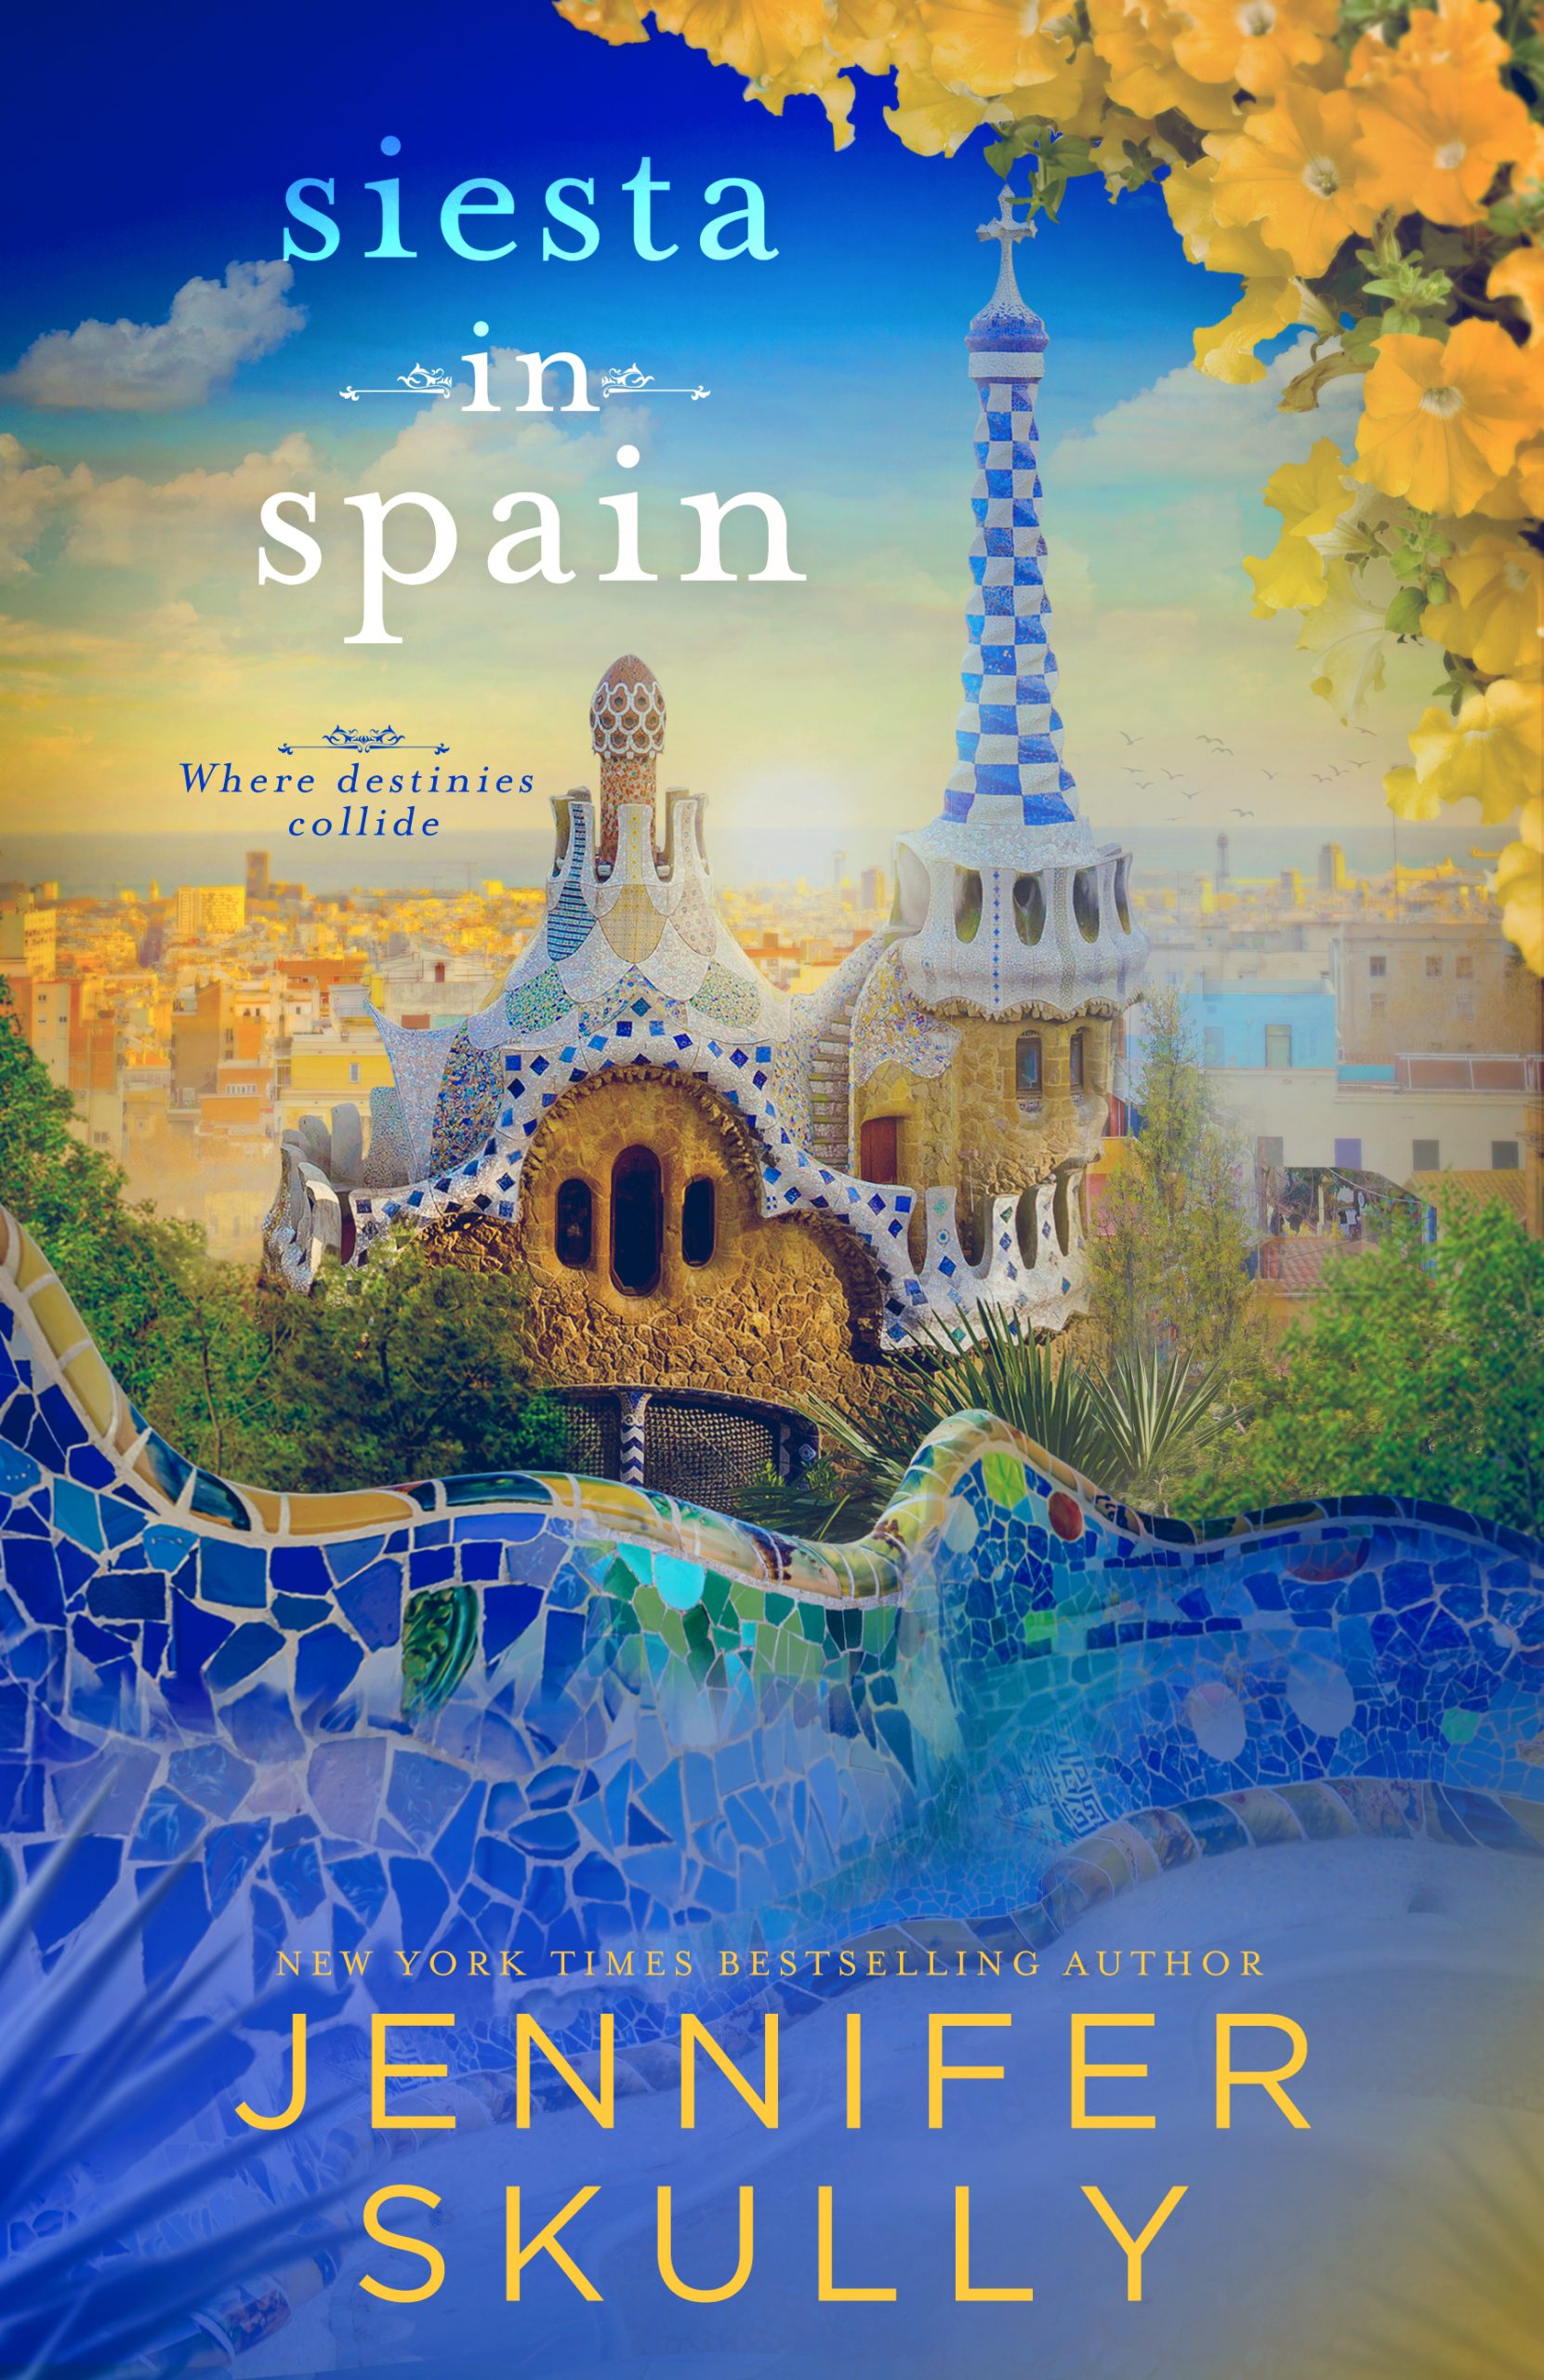 Siesta in Spain (Once Again Book 7)